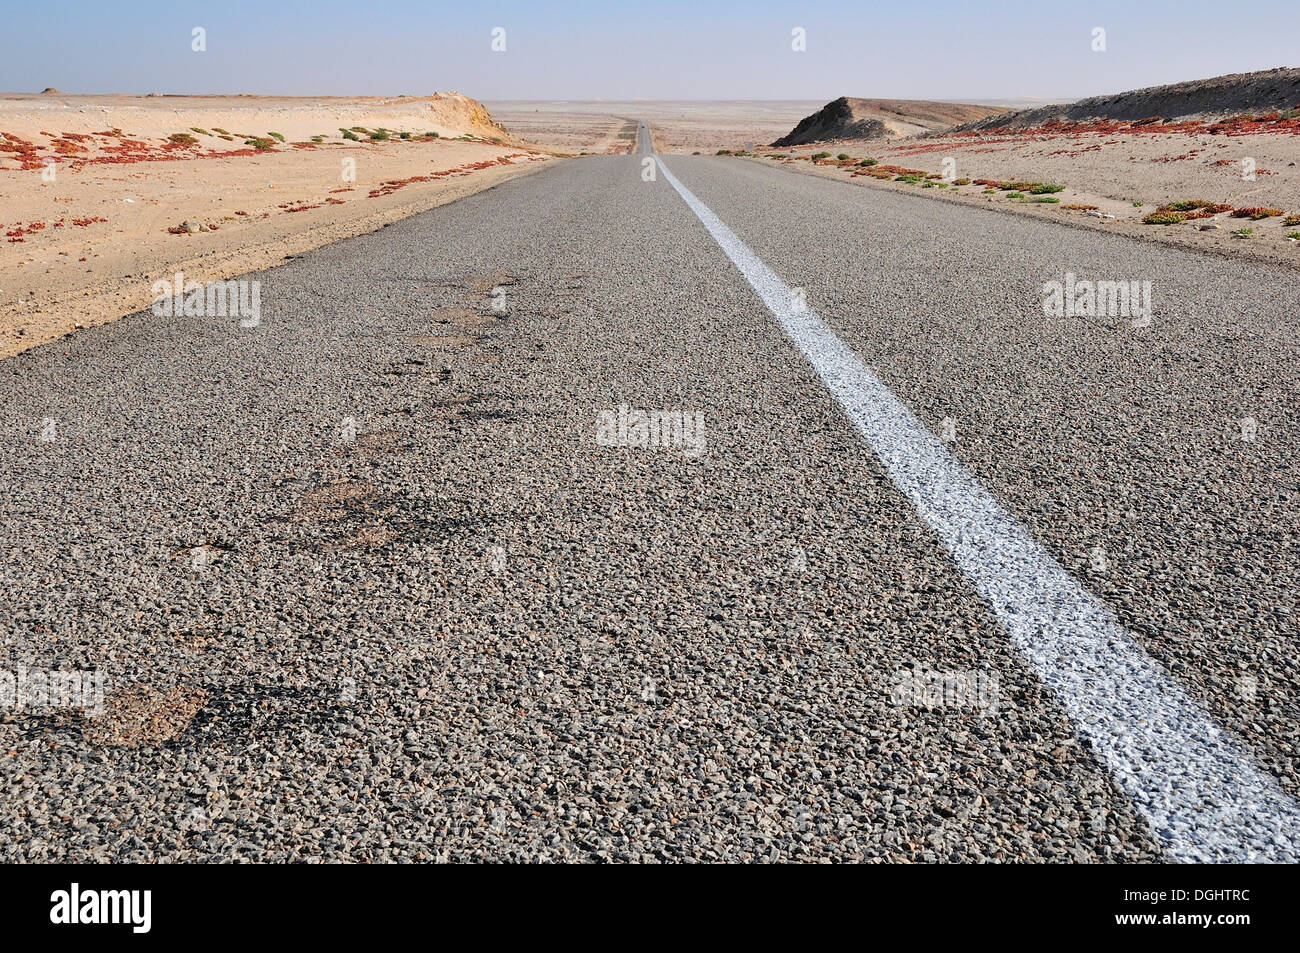 Route de campagne asphaltée au Sahara Occidental, vers la Mauritanie, Oued Ed-Dahab-Lagouira région, Maroc Banque D'Images